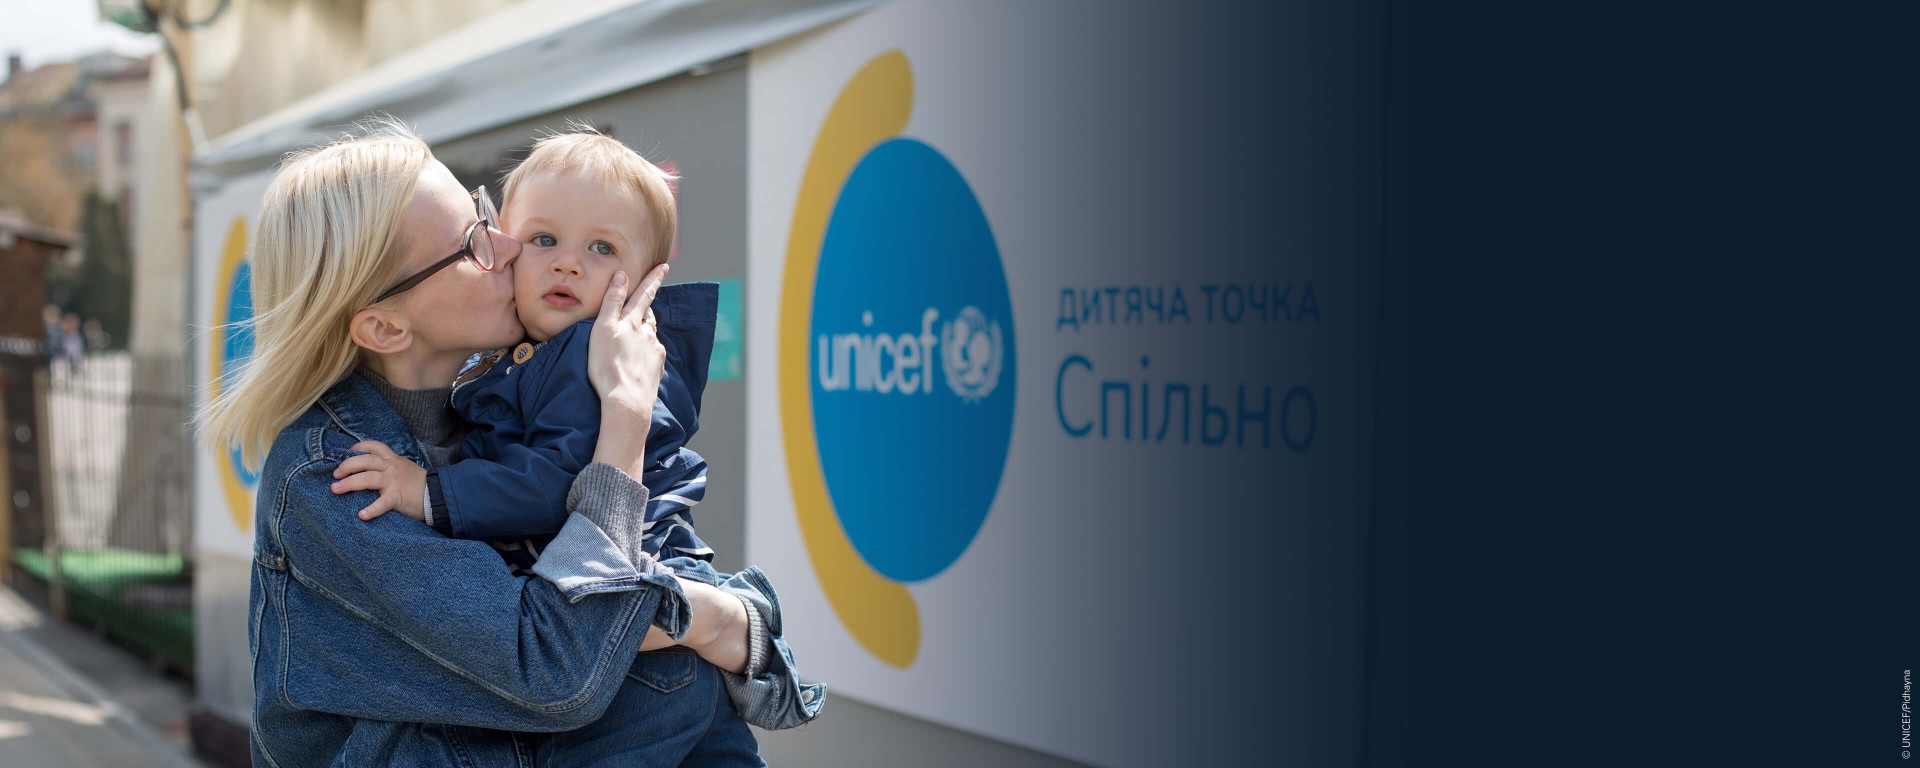 UNICEF Polska - Przekaż 1,5%!